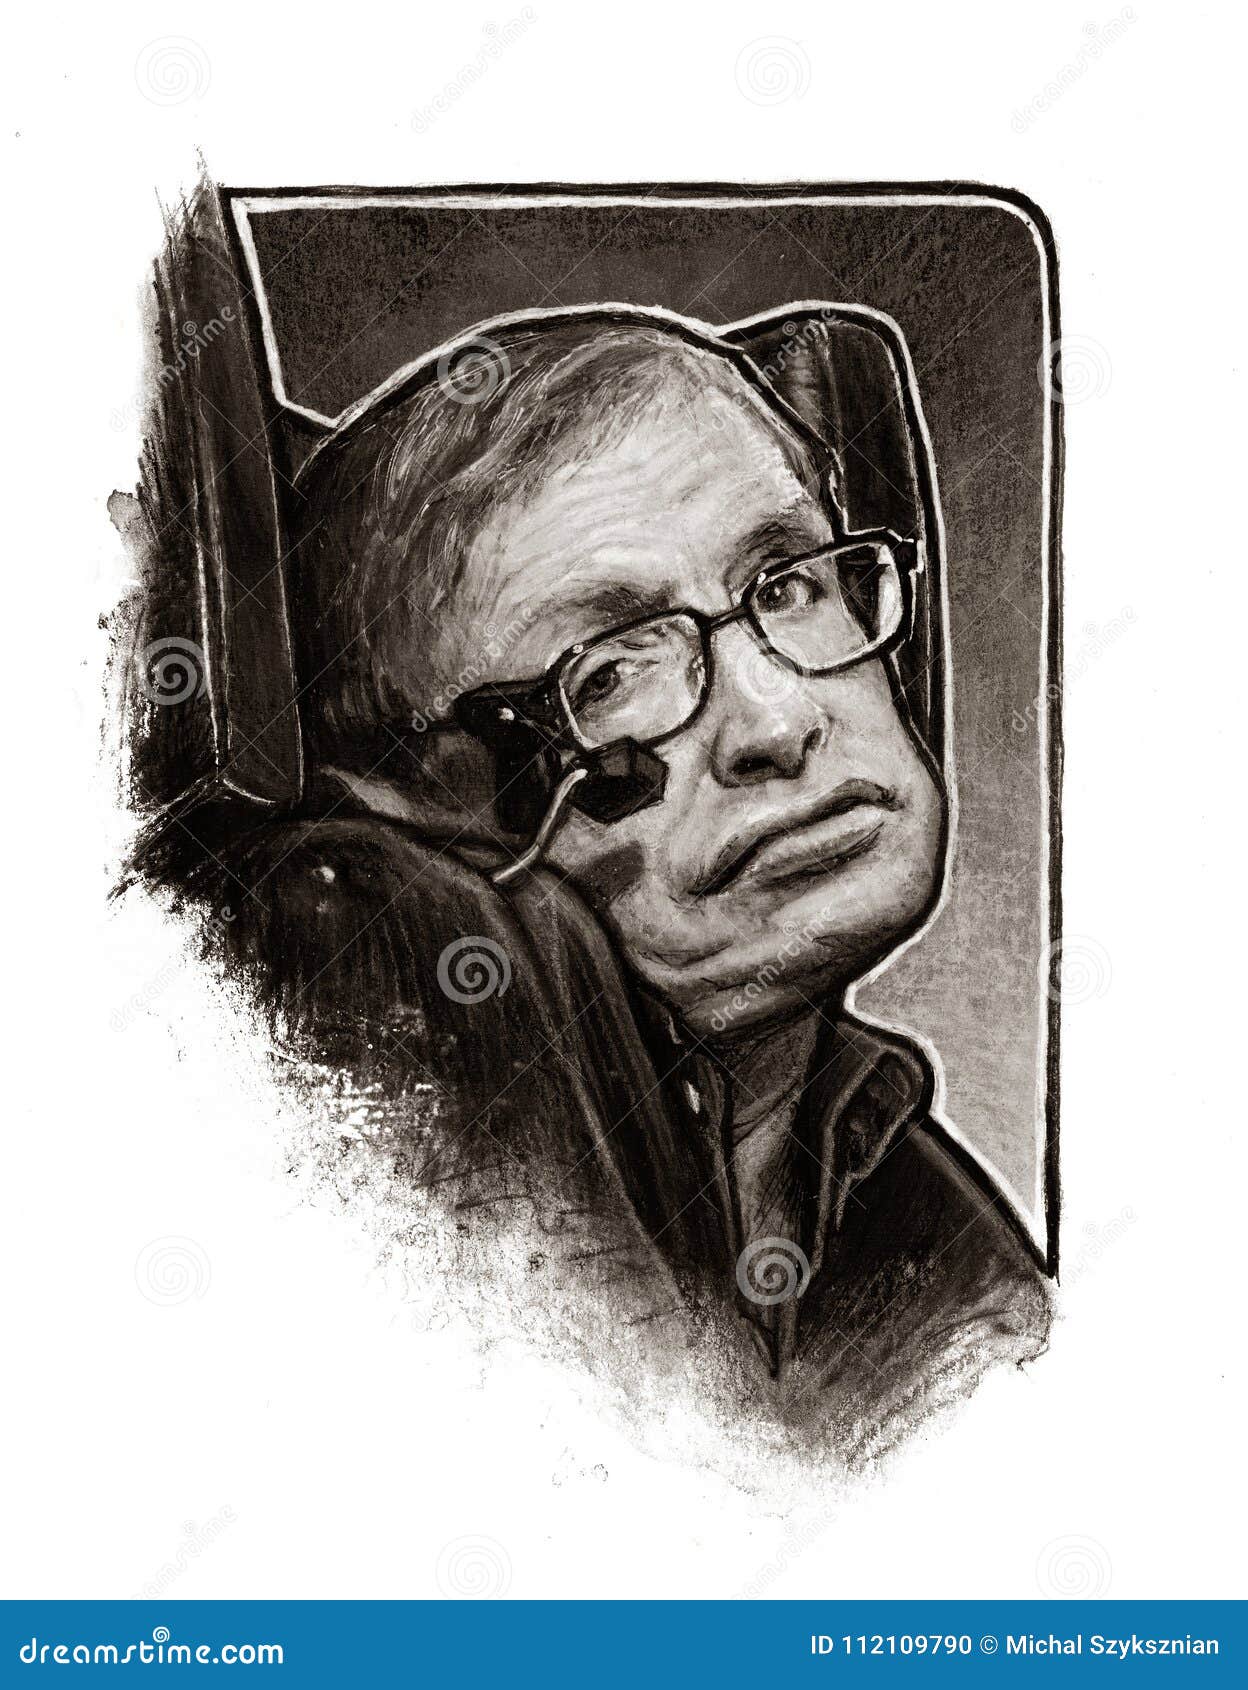 Stephen Hawking | Art drawings, Art, Drawings